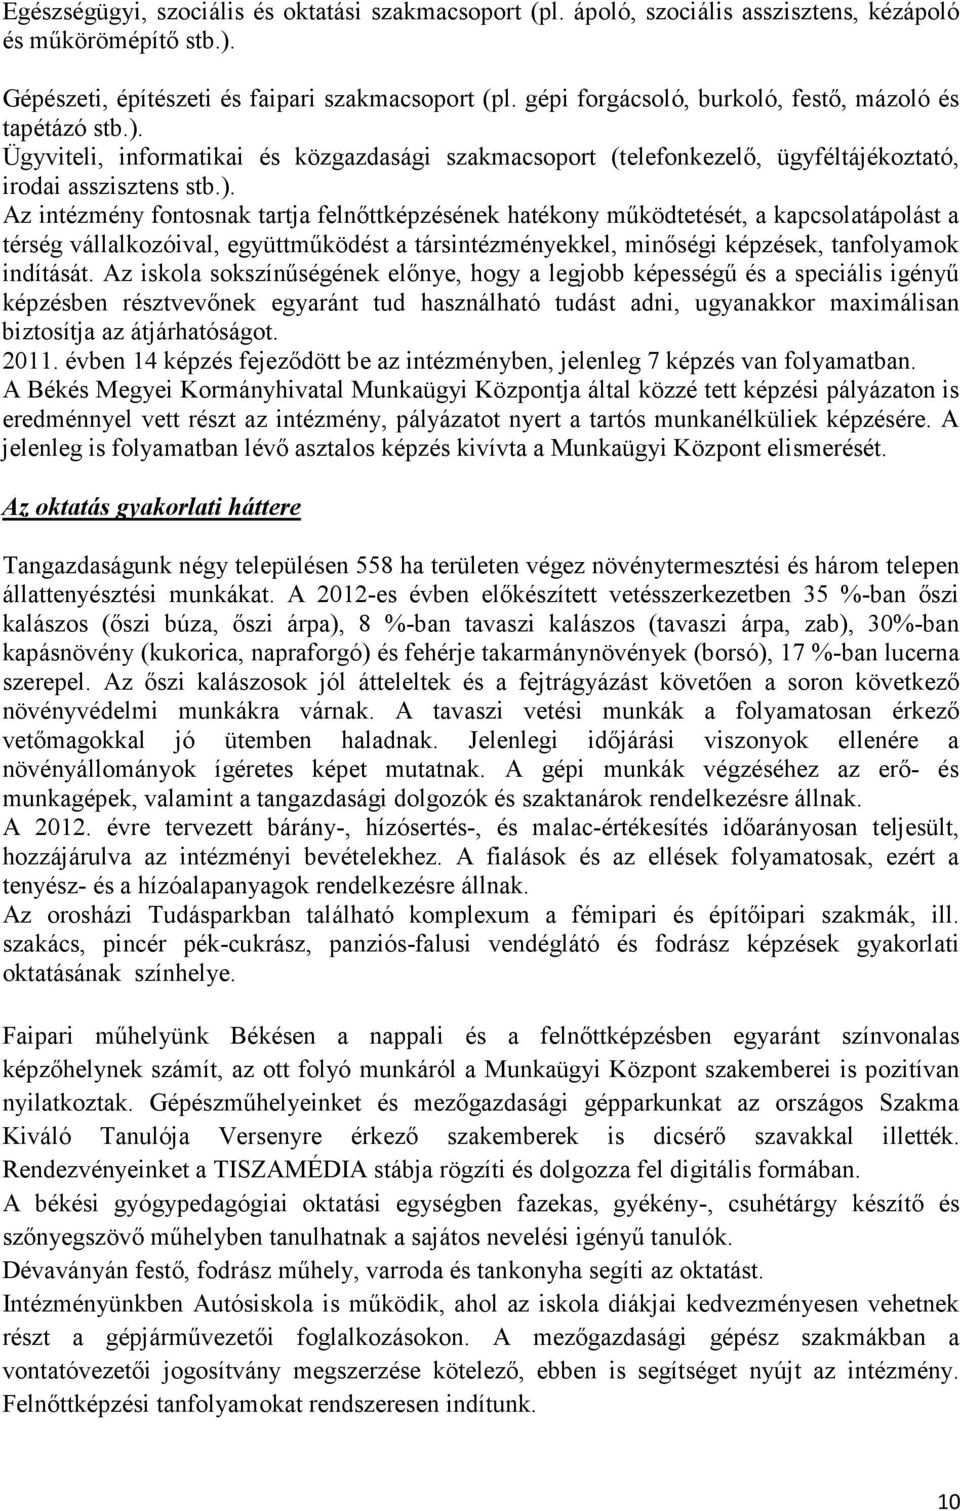 Ügyviteli, informatikai és közgazdasági szakmacsoport (telefonkezelı, ügyféltájékoztató, irodai asszisztens stb.).